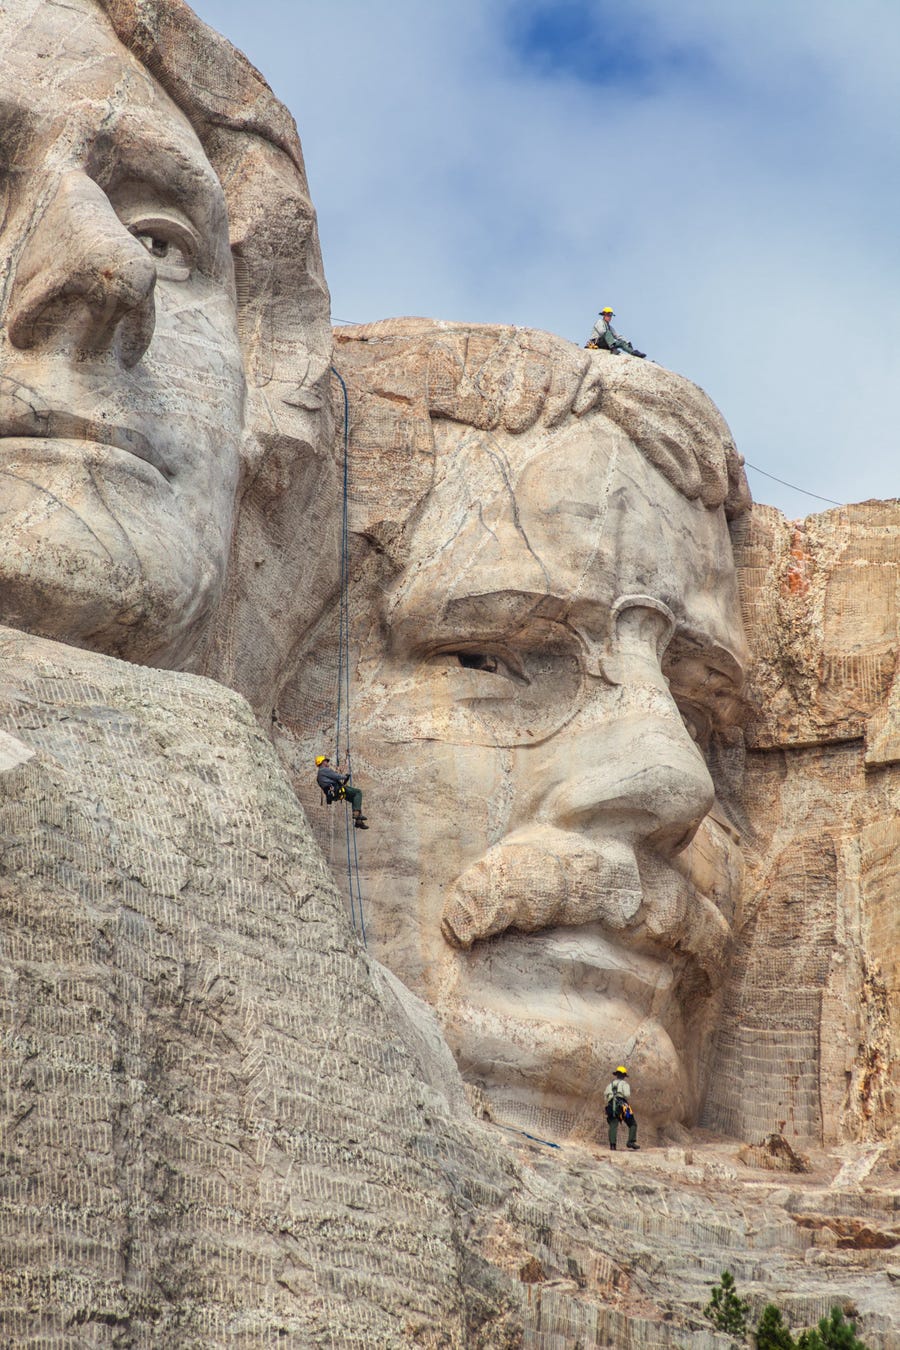 Khuôn mặt của Tổng thống Thomas Jefferson ban đầu được thiết kế ở bên phải của Tổng thống Washington. Sau đó, các công nhân thấy rằng hòn đá bên phải Washington quá yếu để điêu khắc, vì vậy họ buộc phải di chuyển tượng Thomas Jefferson sang bên trái. Mỗi bức tượng đầu tổng thống Mỹ trên núi Rushmore cao 18 m với mũi cao khoảng 6,4 m, mắt rộng 3,4 m và miệng rộng 5,5 m. Roosevelt nổi tiếng với hình ảnh đeo kính, vì vậy, Borglum đã đưa chi tiết này vào tác phẩm điêu khắc.